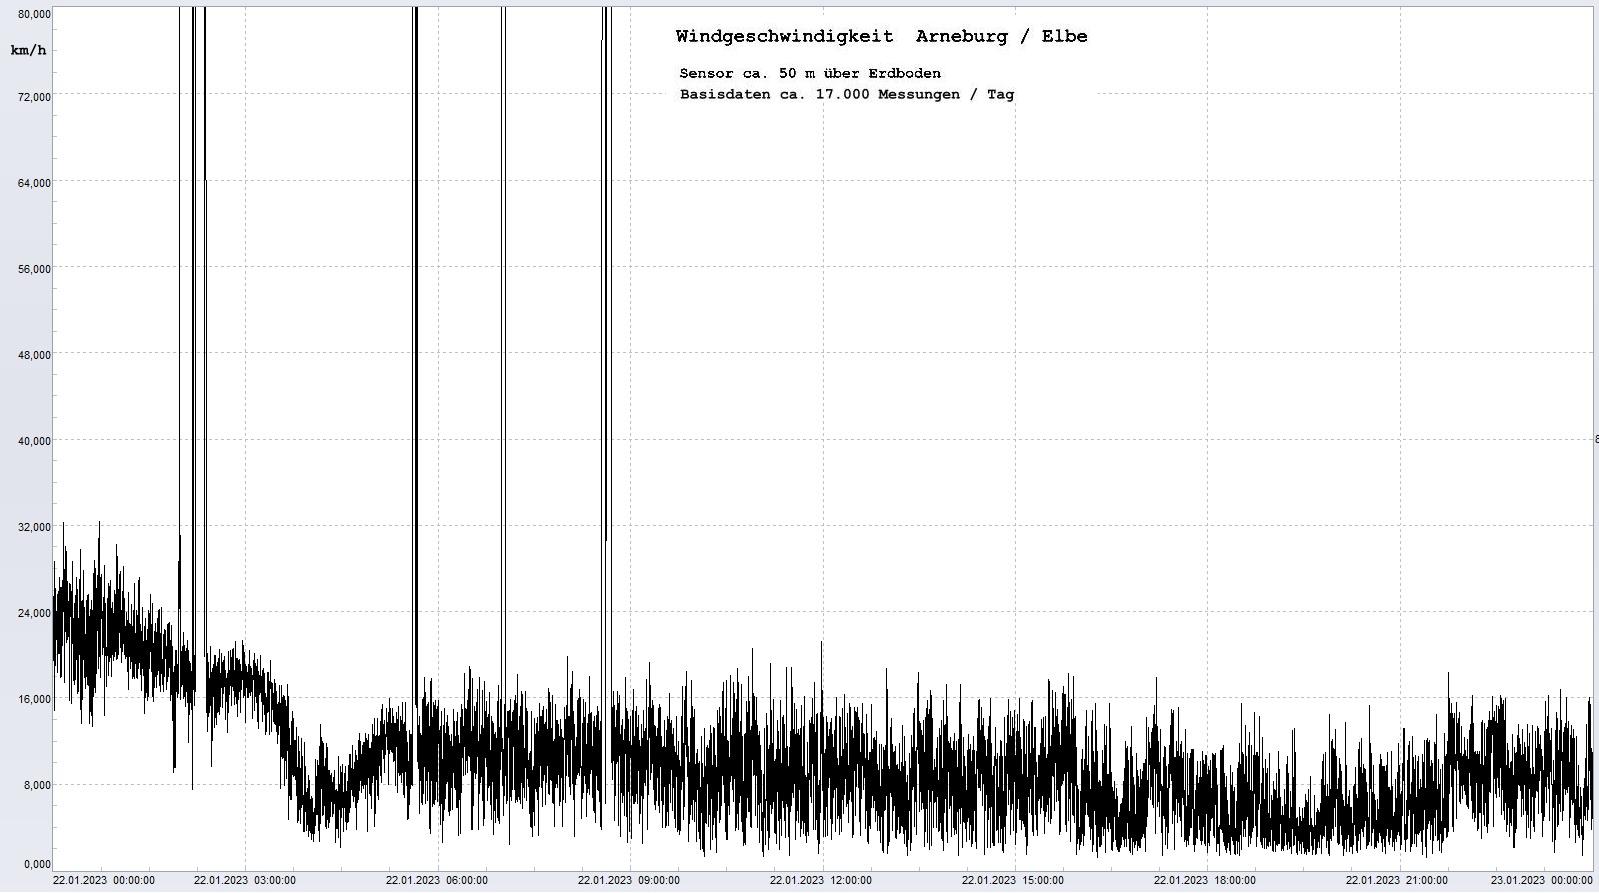 Arneburg Tages-Diagramm Winddaten, 22.01.2023
  Diagramm, Sensor auf Gebude, ca. 50 m ber Erdboden, Basis: 5s-Aufzeichnung